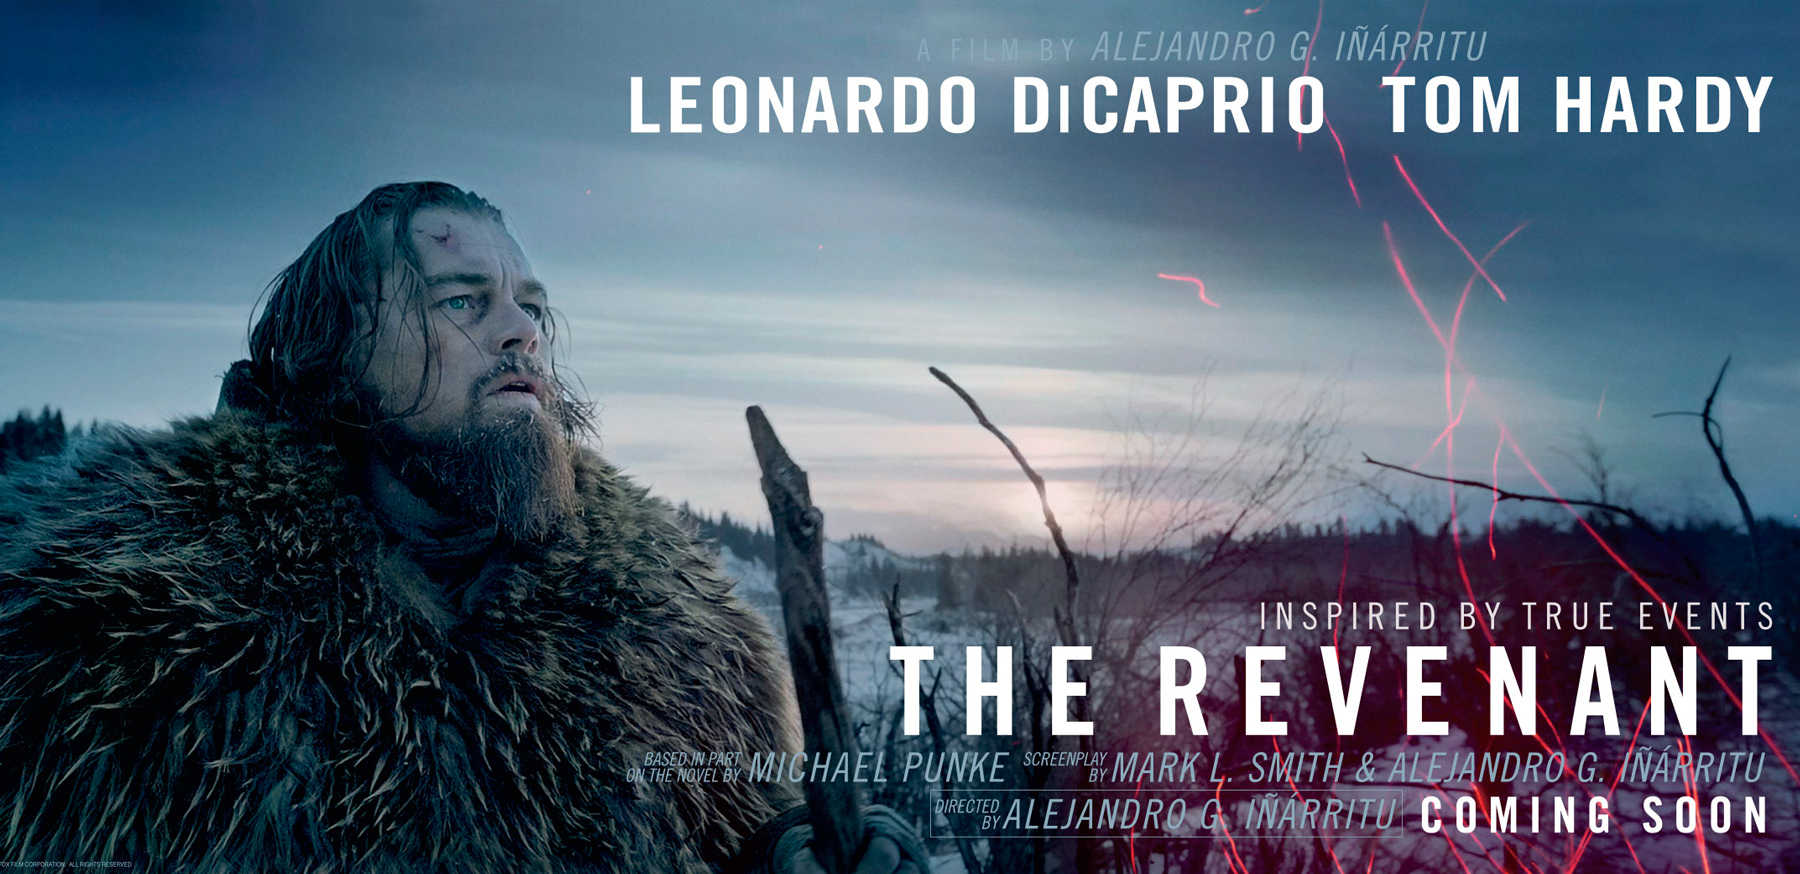 The Revenant 2015 Trailer